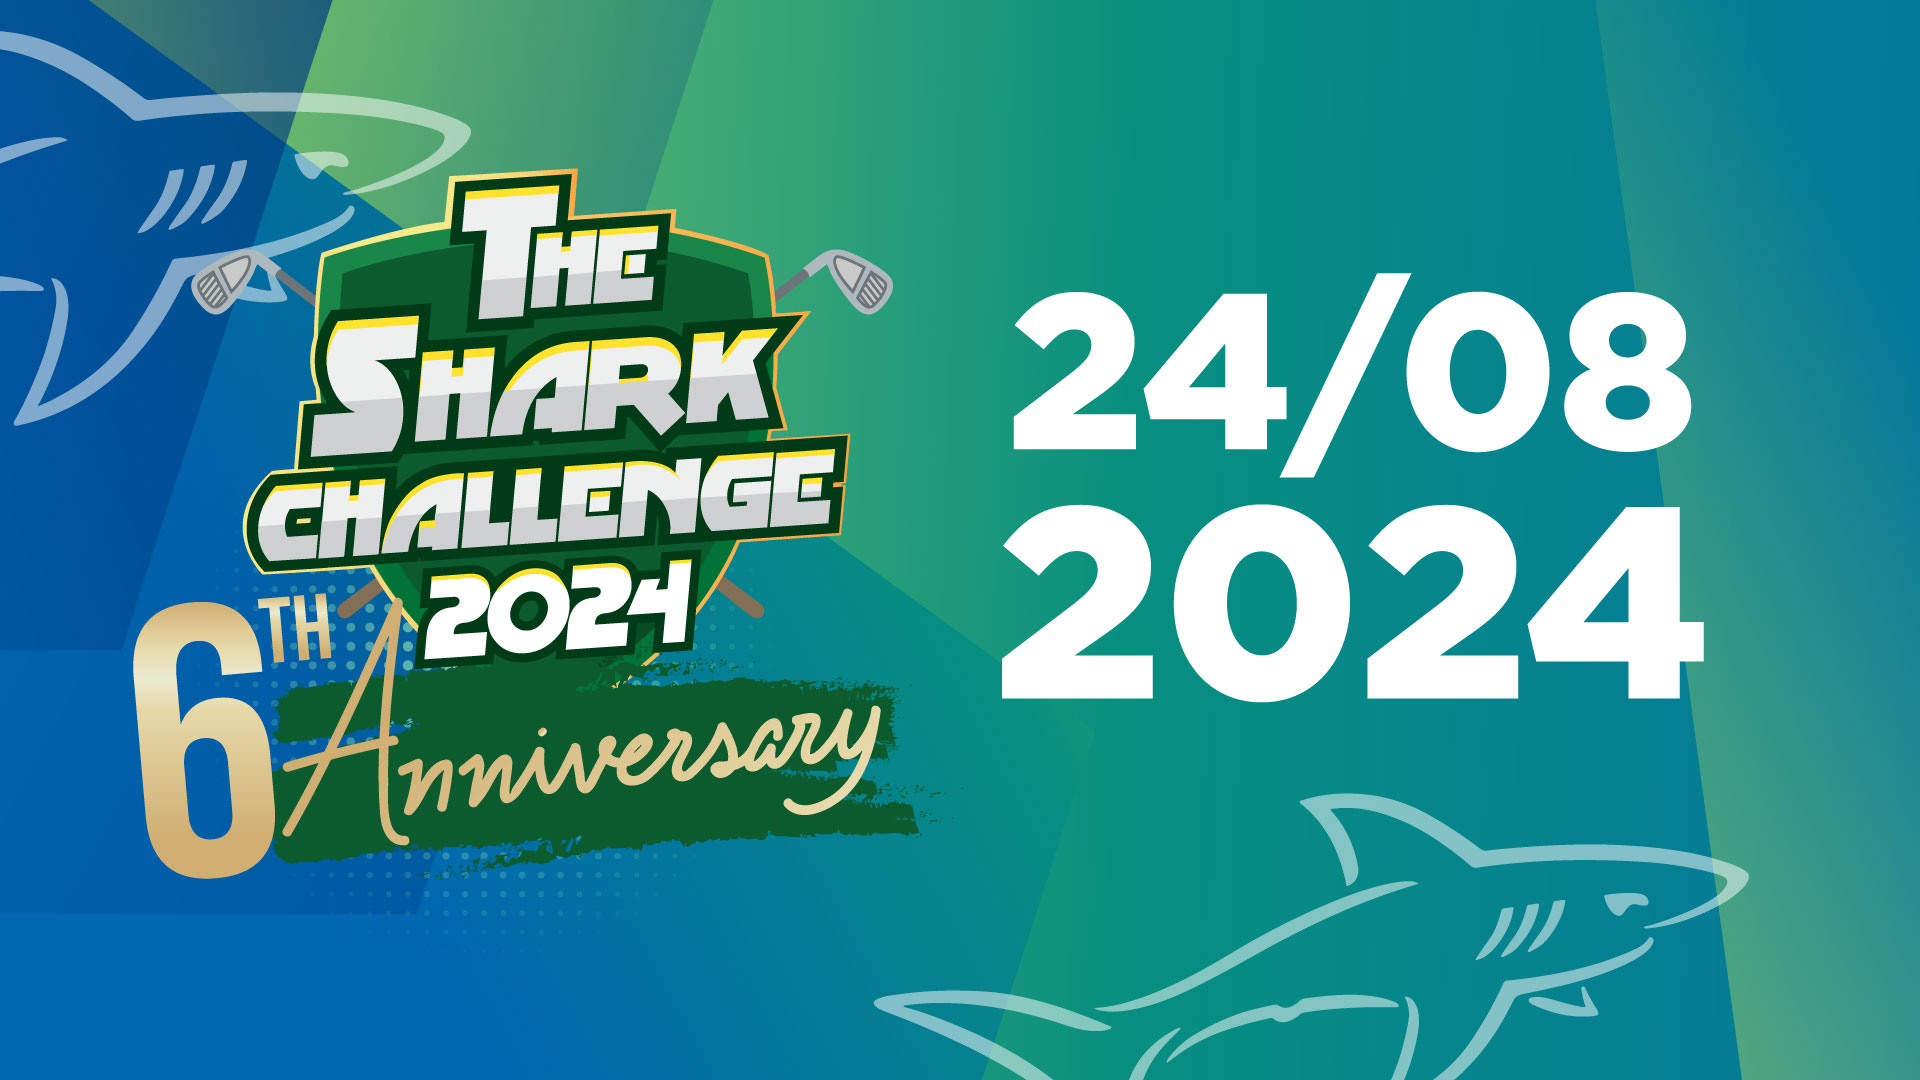 CHÀO MỪNG THE SHARK CHALLENGE 2024!